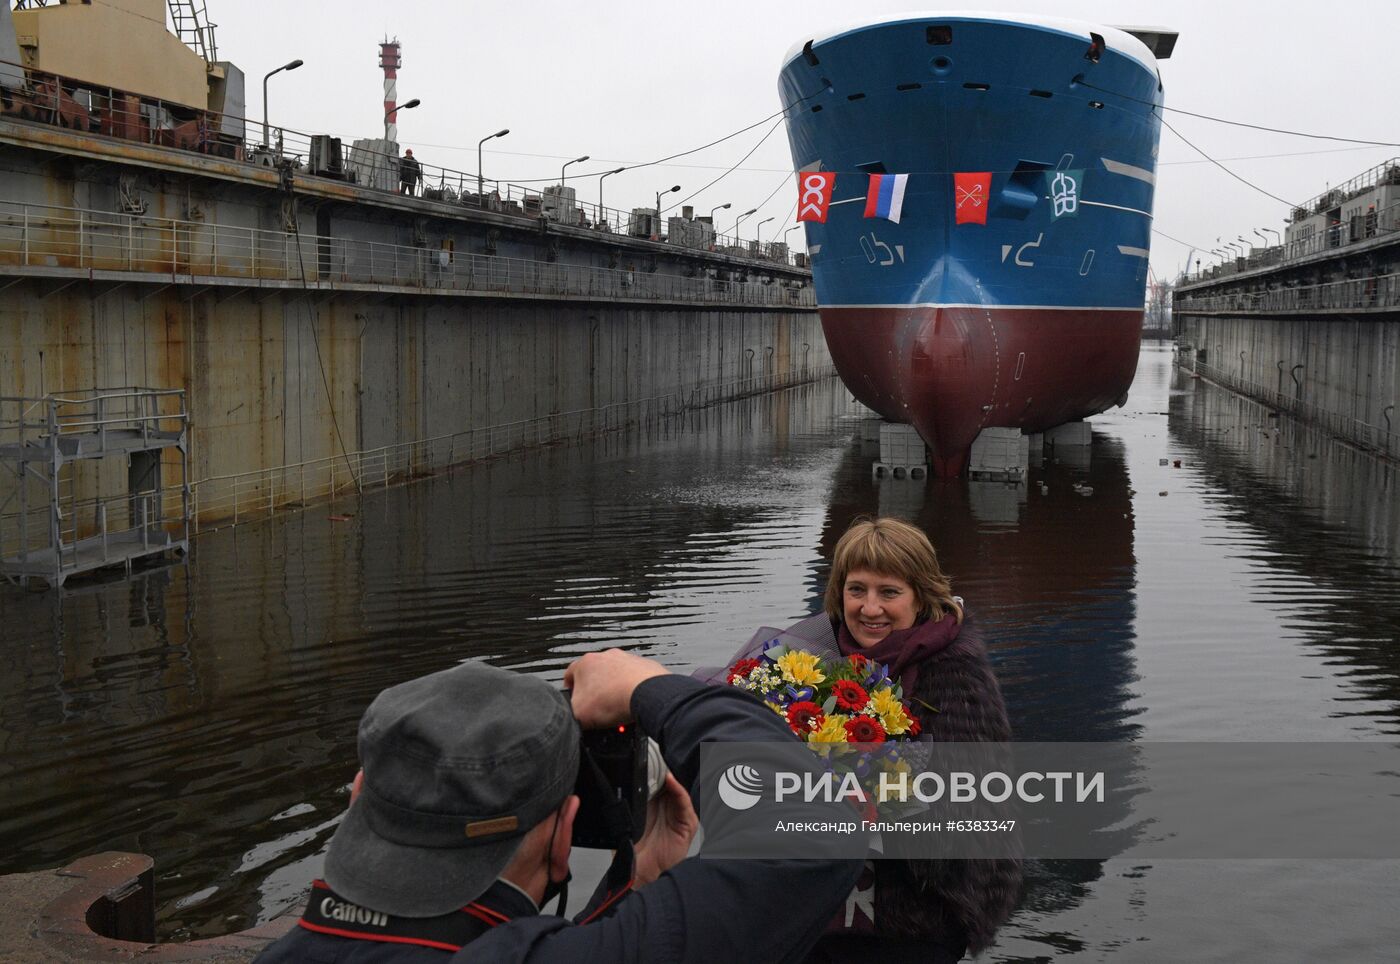 Спуск на воду ярусолова "Марлин" в Санкт-Петербурге